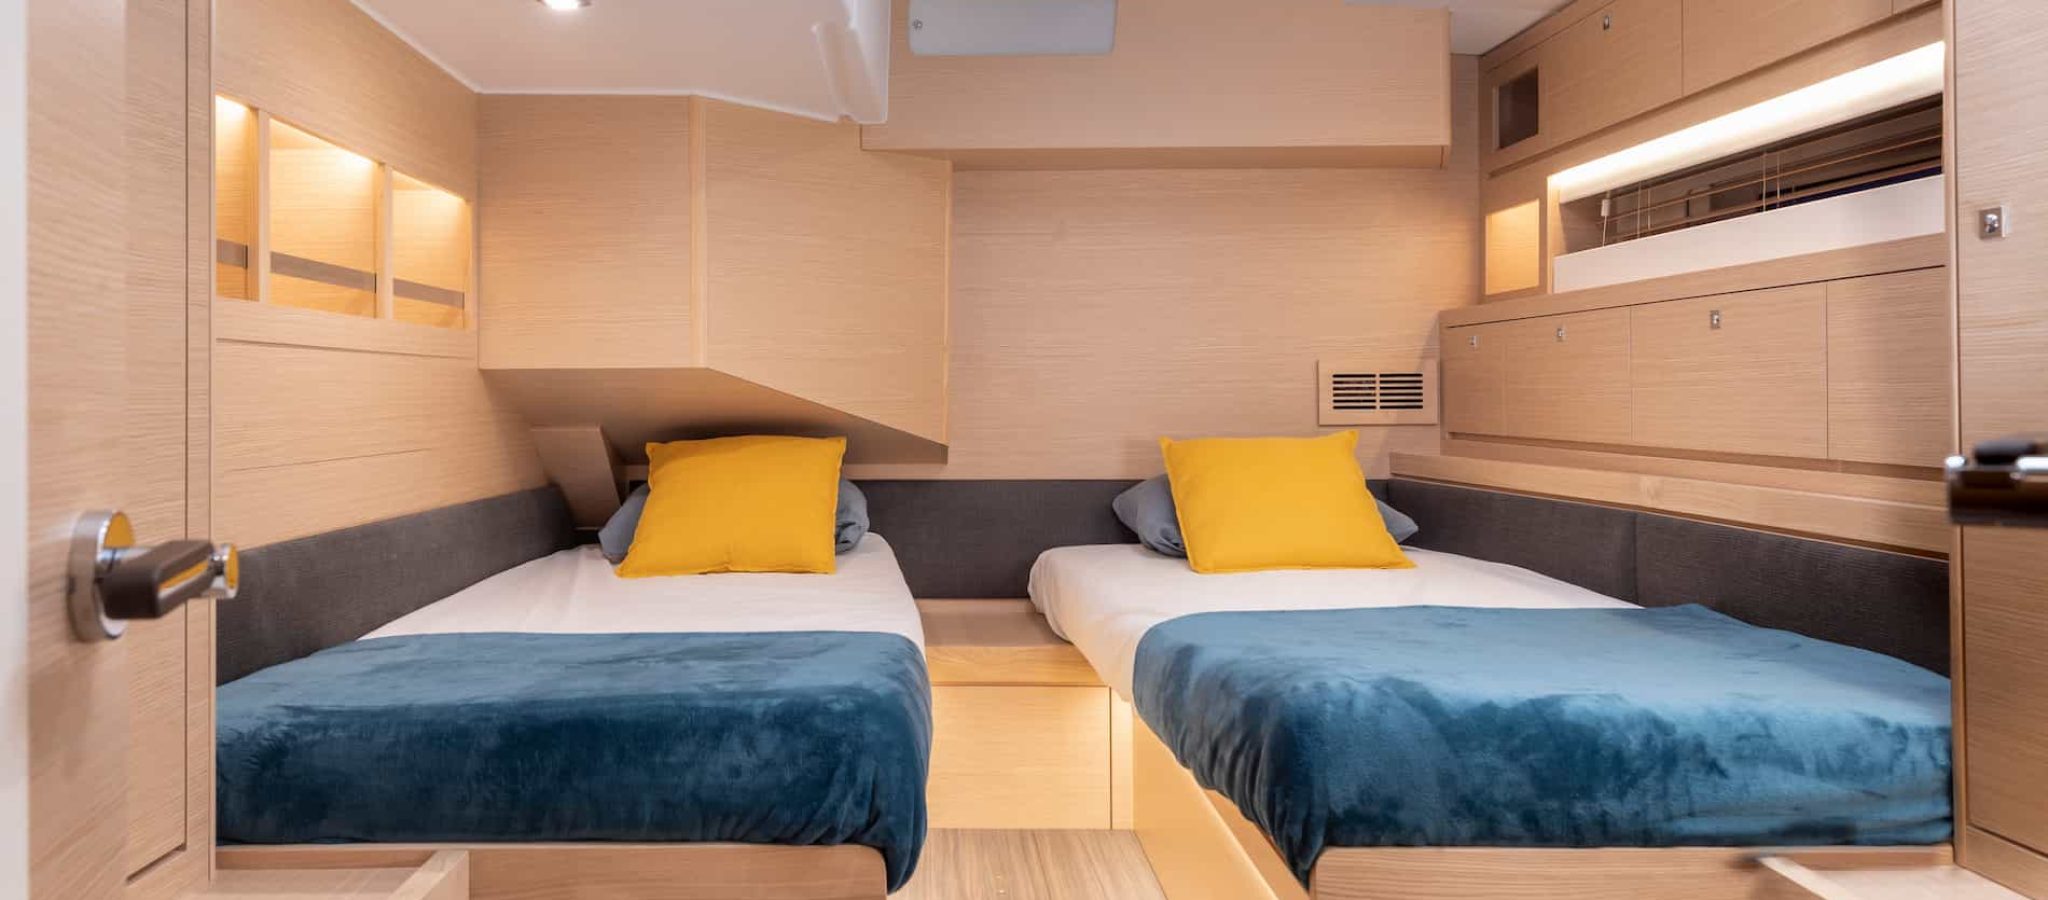 Intérieur du voilier de luxe Dufour 61 cabine double lits simples